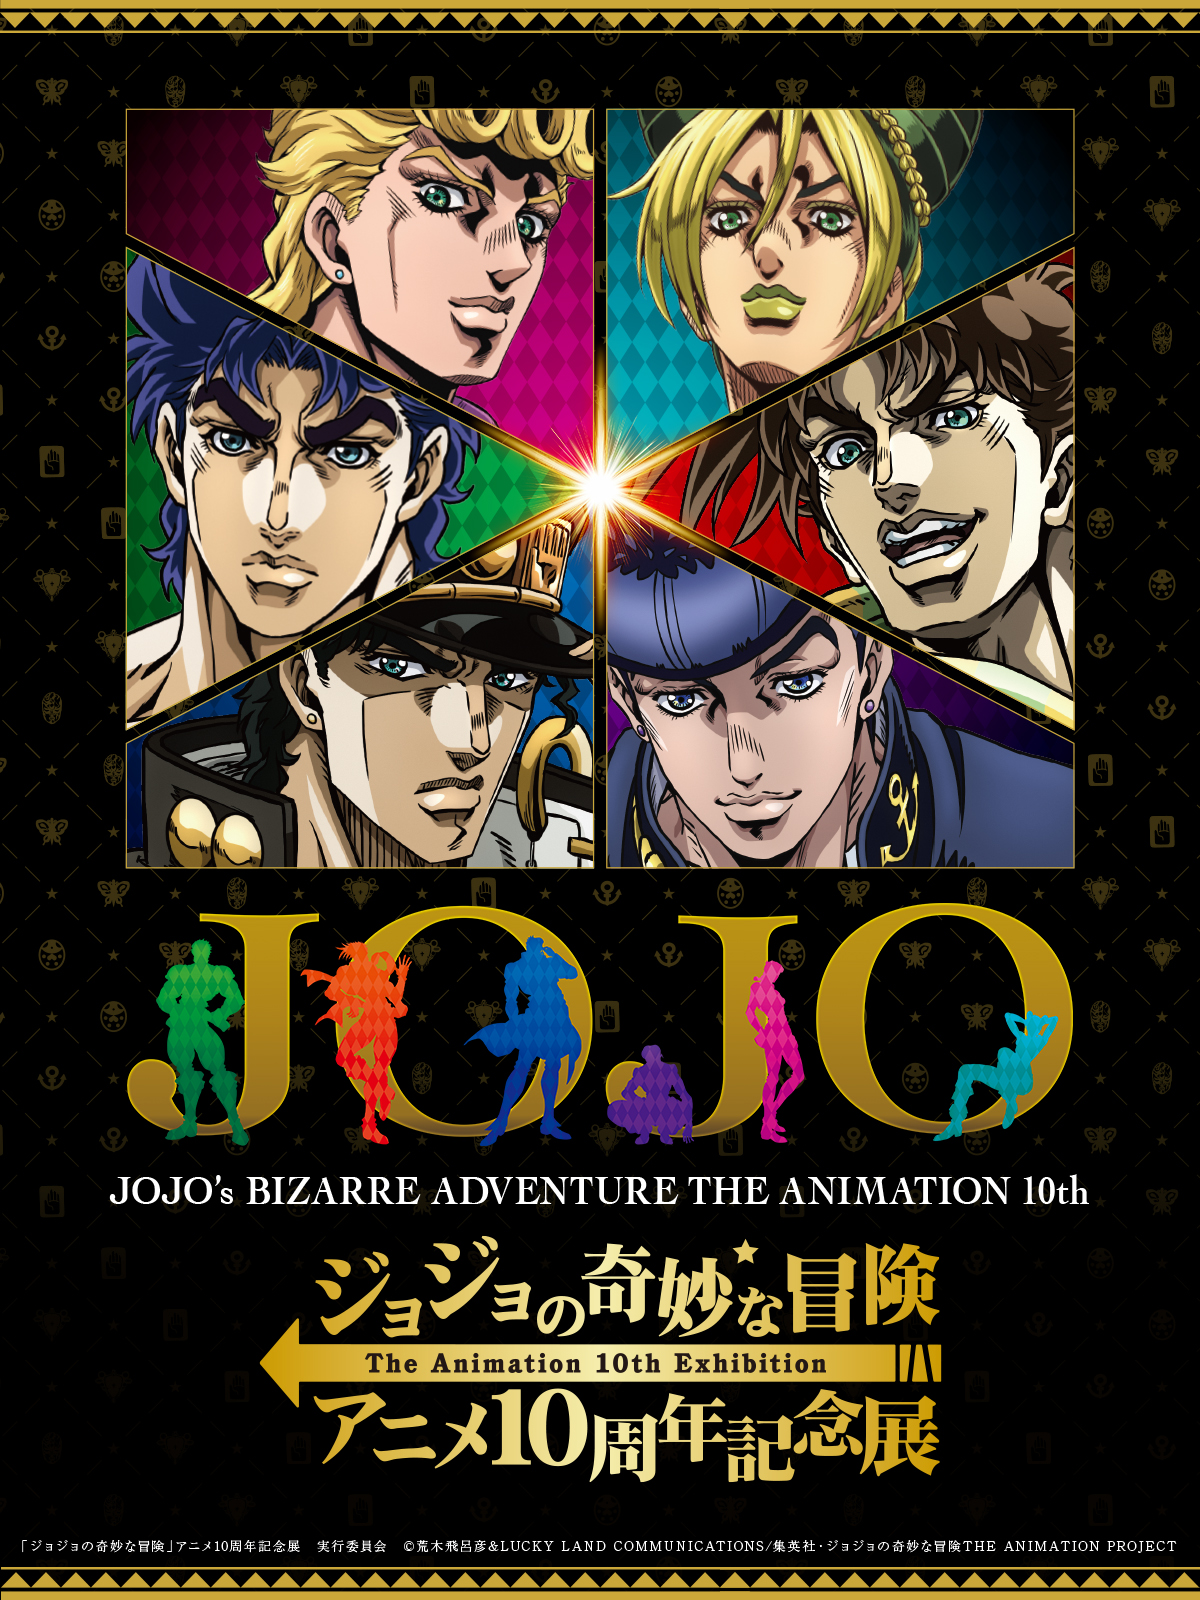 ジョジョの奇妙な冒険 アニメ10周年記念展 キービジュアルやオリジナル 